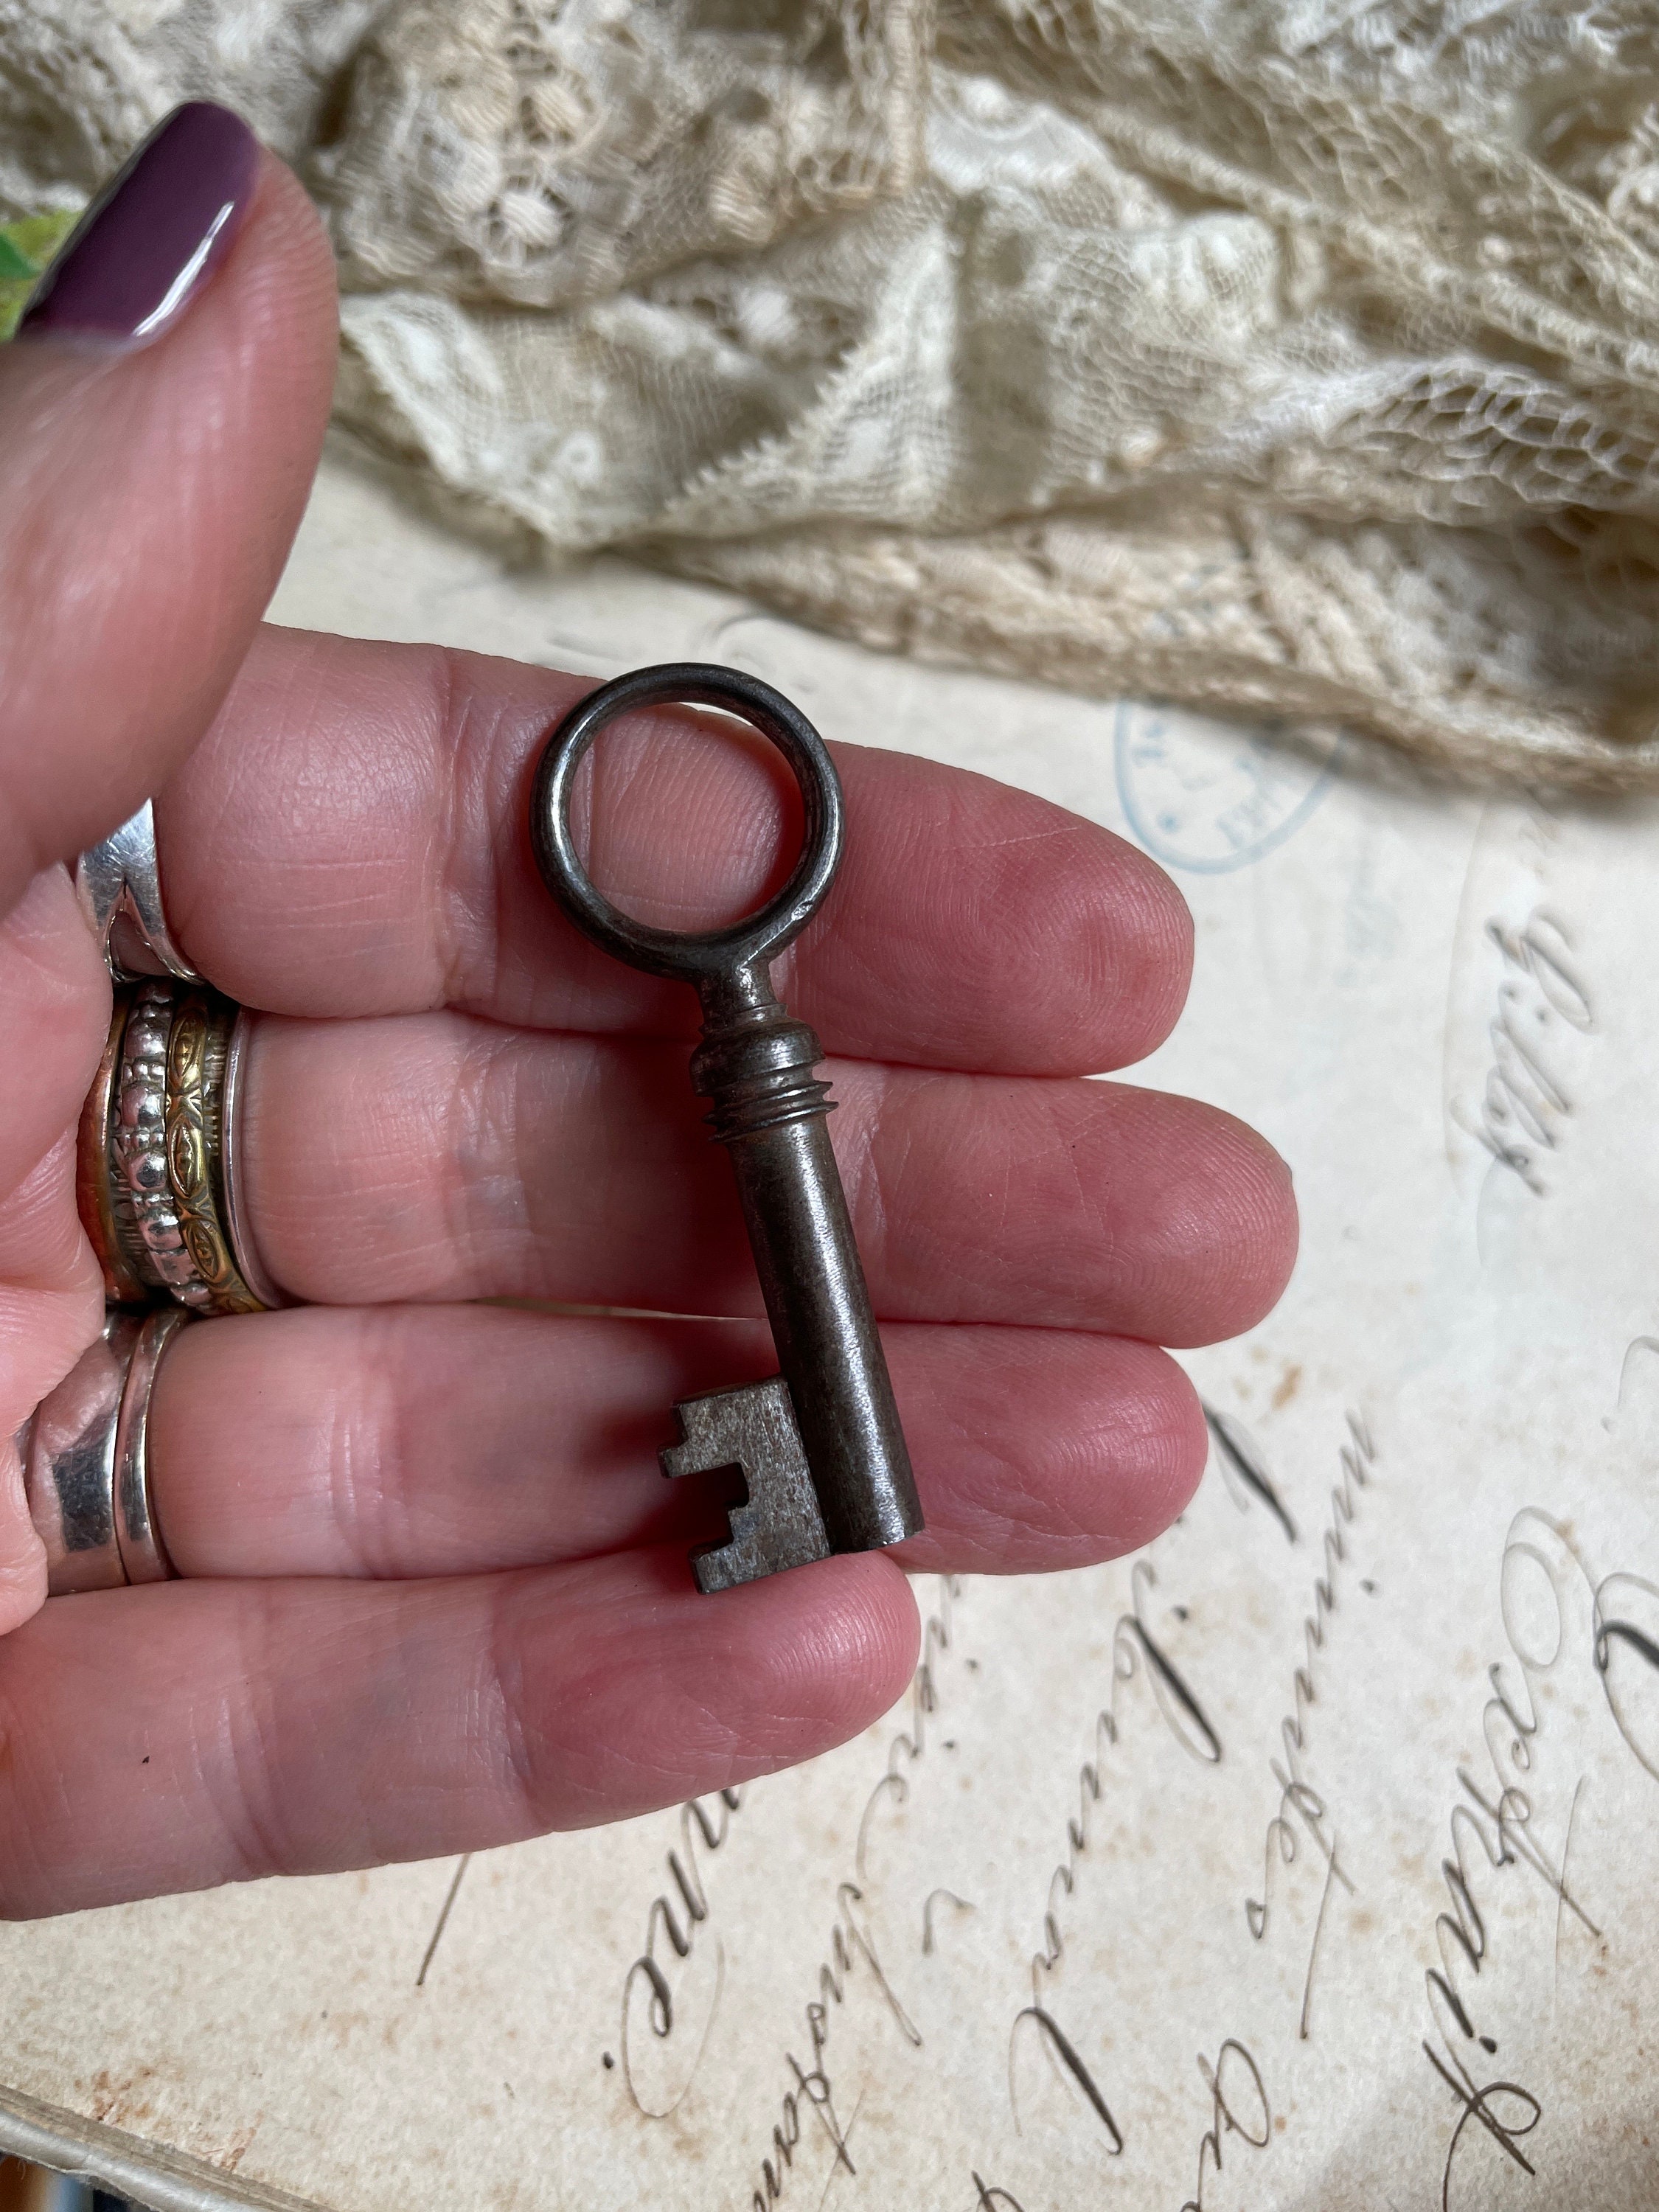 Skeleton Keys - Vintage Antique keys- Barrel keys - D83 – steampunkjunq